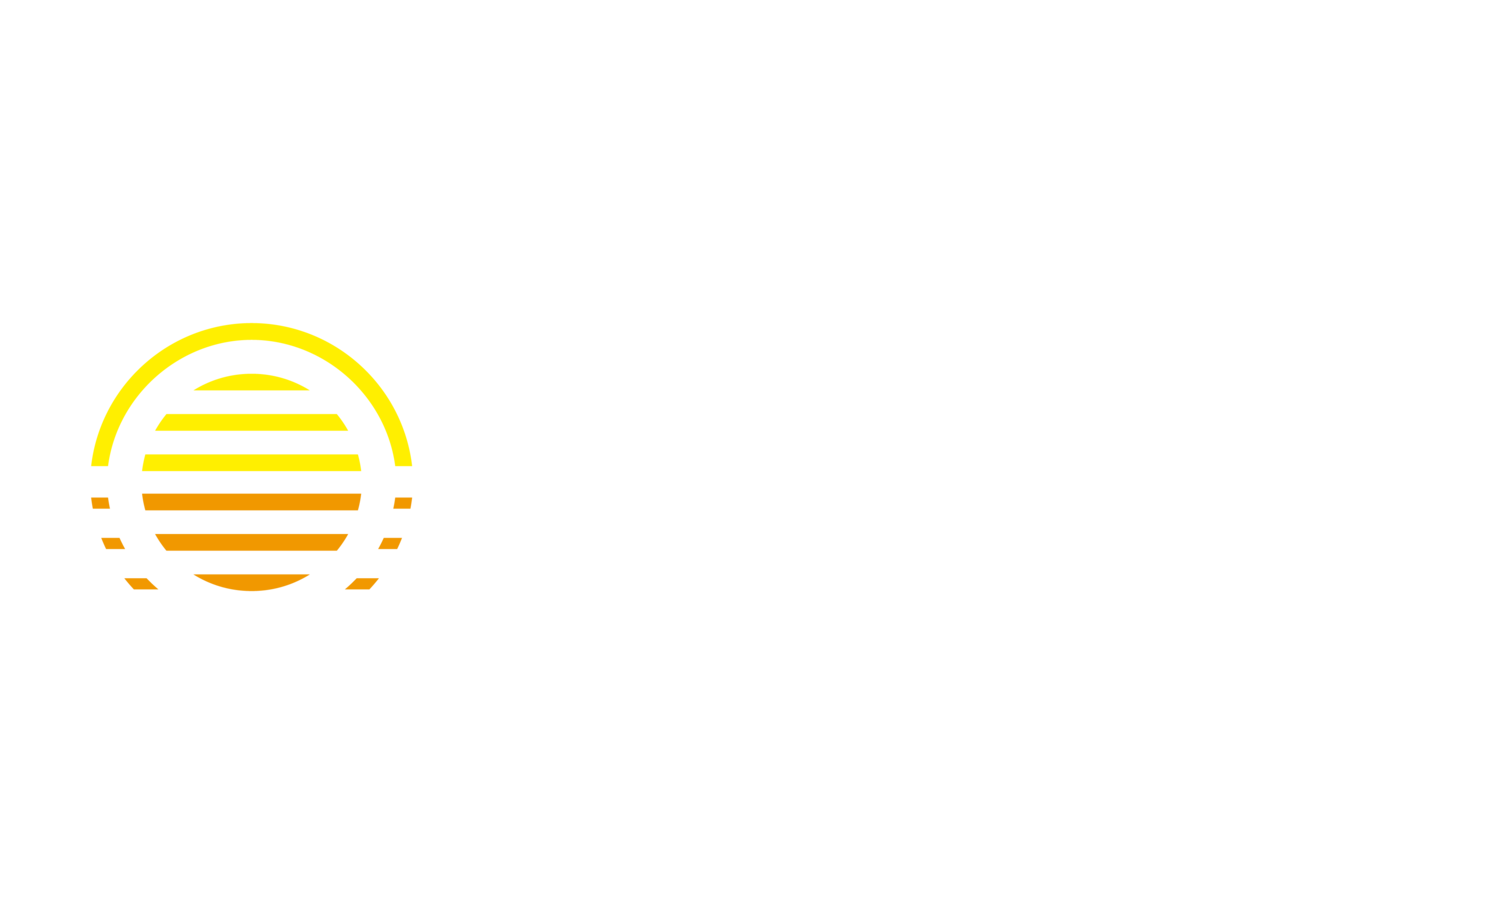 Justin M Owens CPA LLC